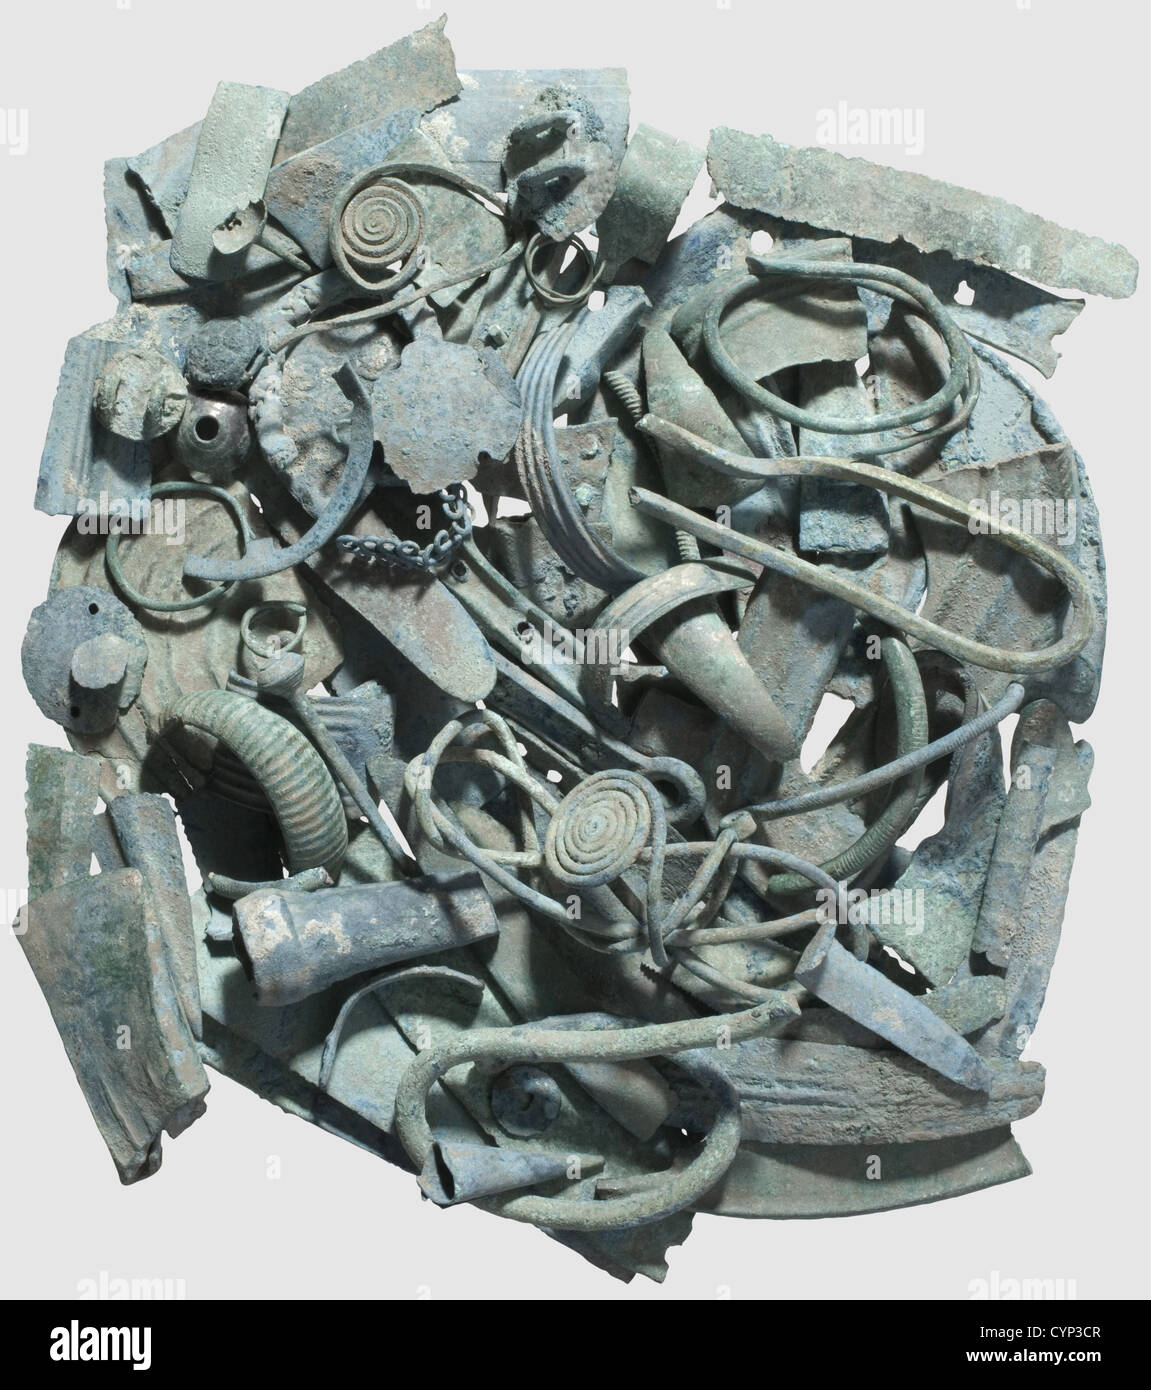 Une découverte de cerard de l'âge de bronze, région du Danube central,1300 - 1100 C.-B. composé de 142 parties(poids: Env. 5 kg). 35 fragments de lesses,poignards et scies,35 fragments de faucilles,17 fragments d'axes,3 fragments de lances,7 fragments de couteaux,12 morceaux de bracelets et de bagues,19 anneaux de cou de fil et parties de bagues,2 aiguilles,6 parties de pendules et de plaques (partiellement décorées),1 fil de péroné et 15 tuli,boutons et fragments de gaines. Excellent état du métal avec surface vert-bleu, en condition de recherche non nettoyée. Collection Axel Guttmann(no inve,Additional-Rights-Clearences-not available Banque D'Images